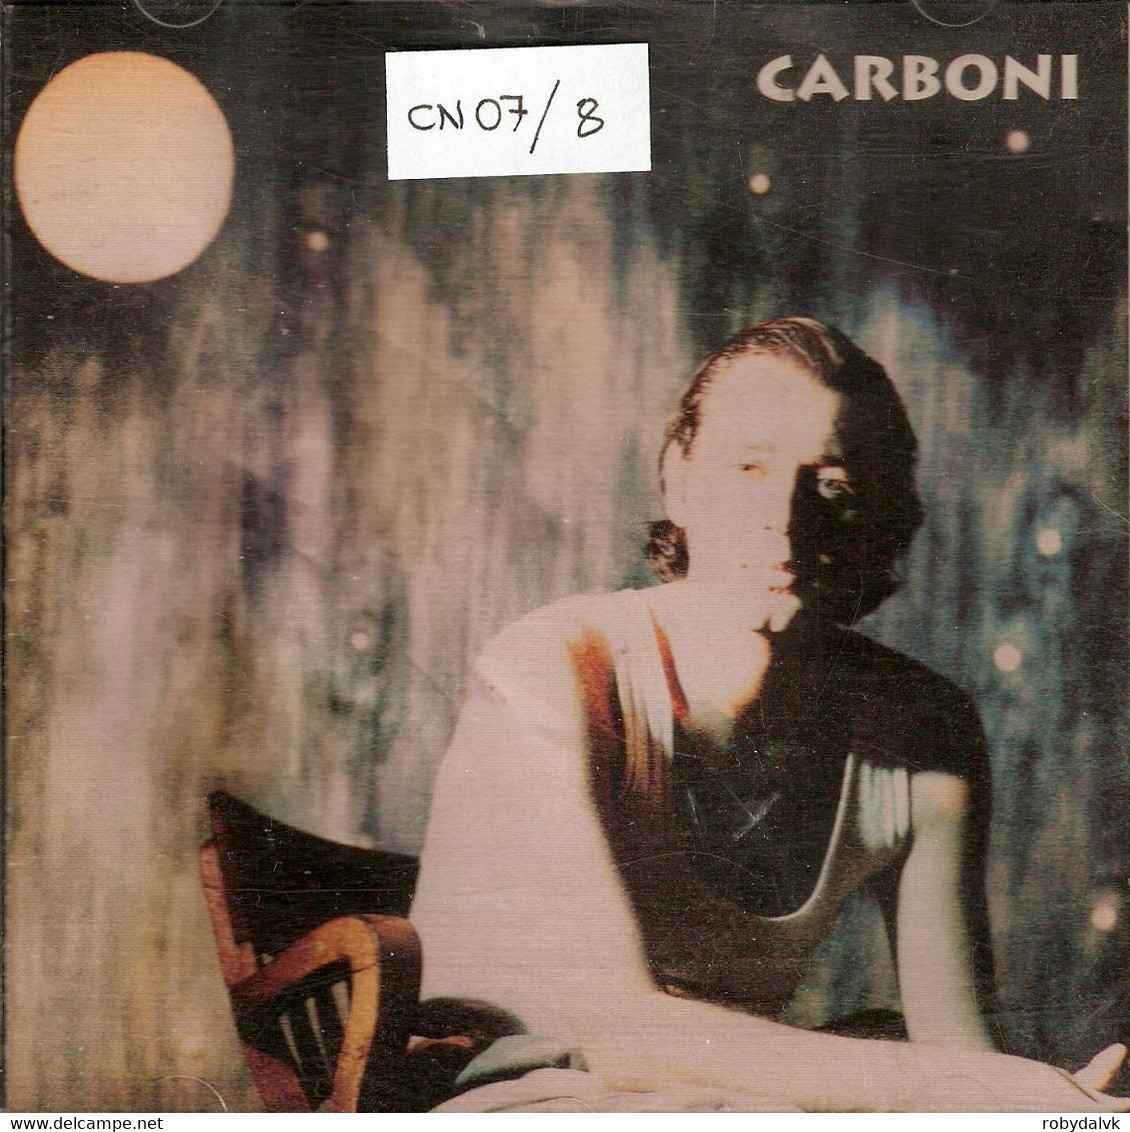 CN07 - LUCA CARBONI : CARBONI - Other - Italian Music